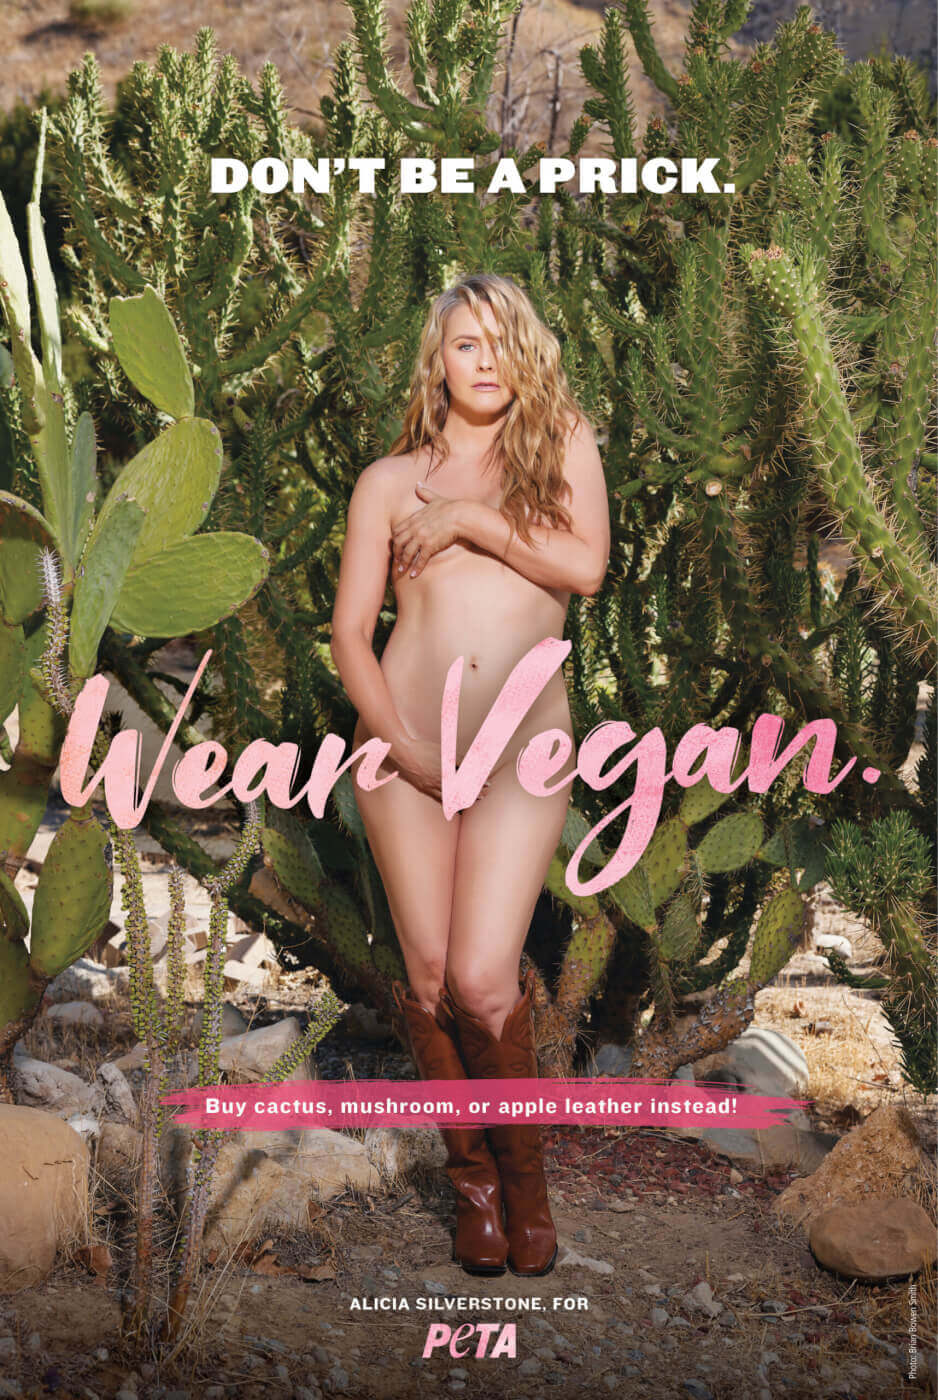 Alicia Silverstone's "wear vegan" ad.